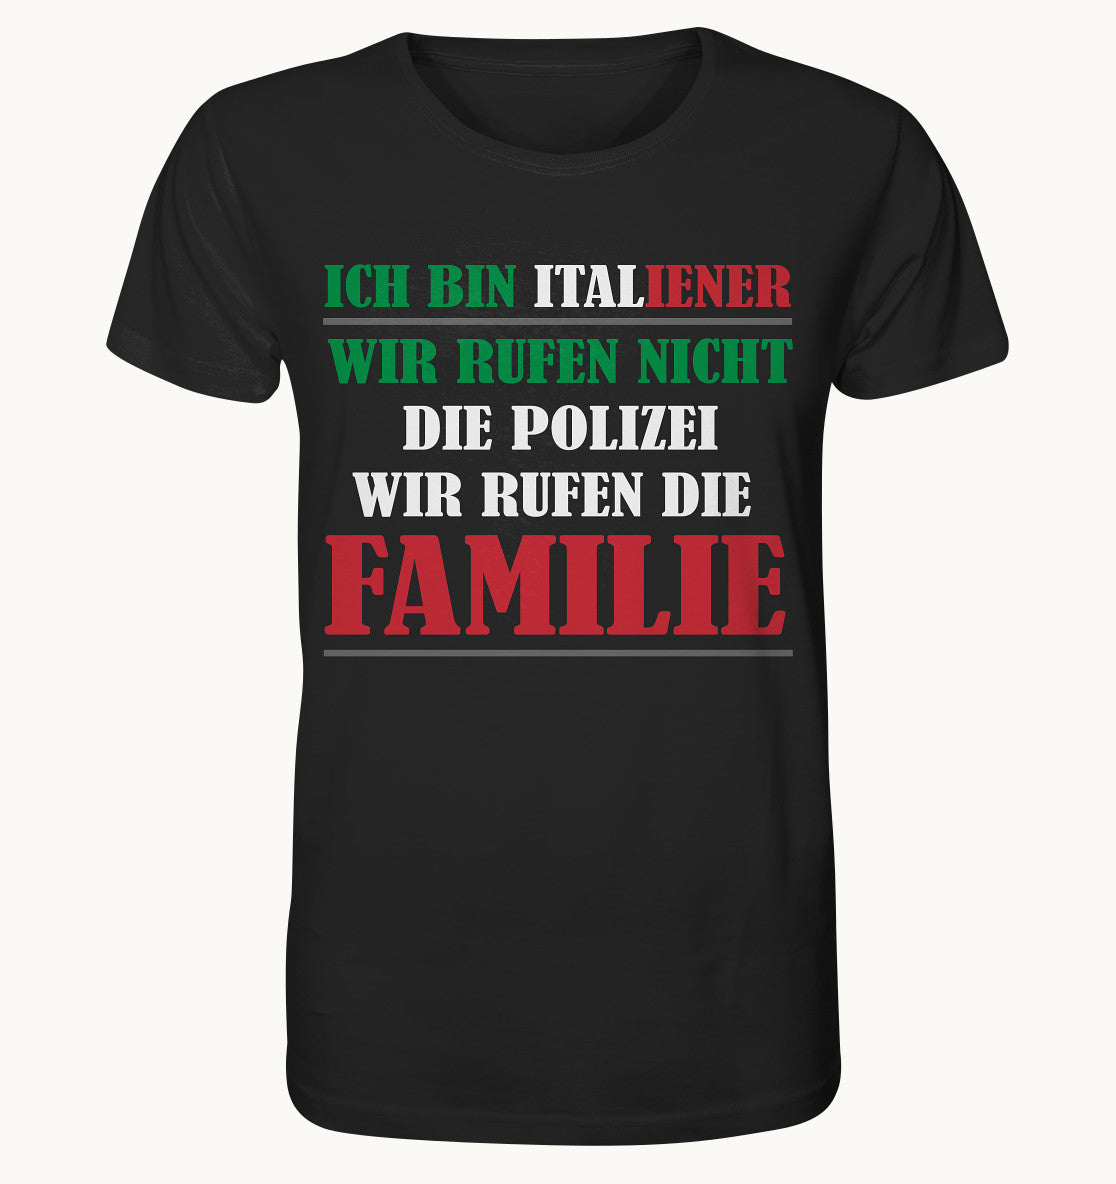 Ich bin Italiener, wir rufen nicht die Polizei, wir rufen die Familie - Organic Shirt